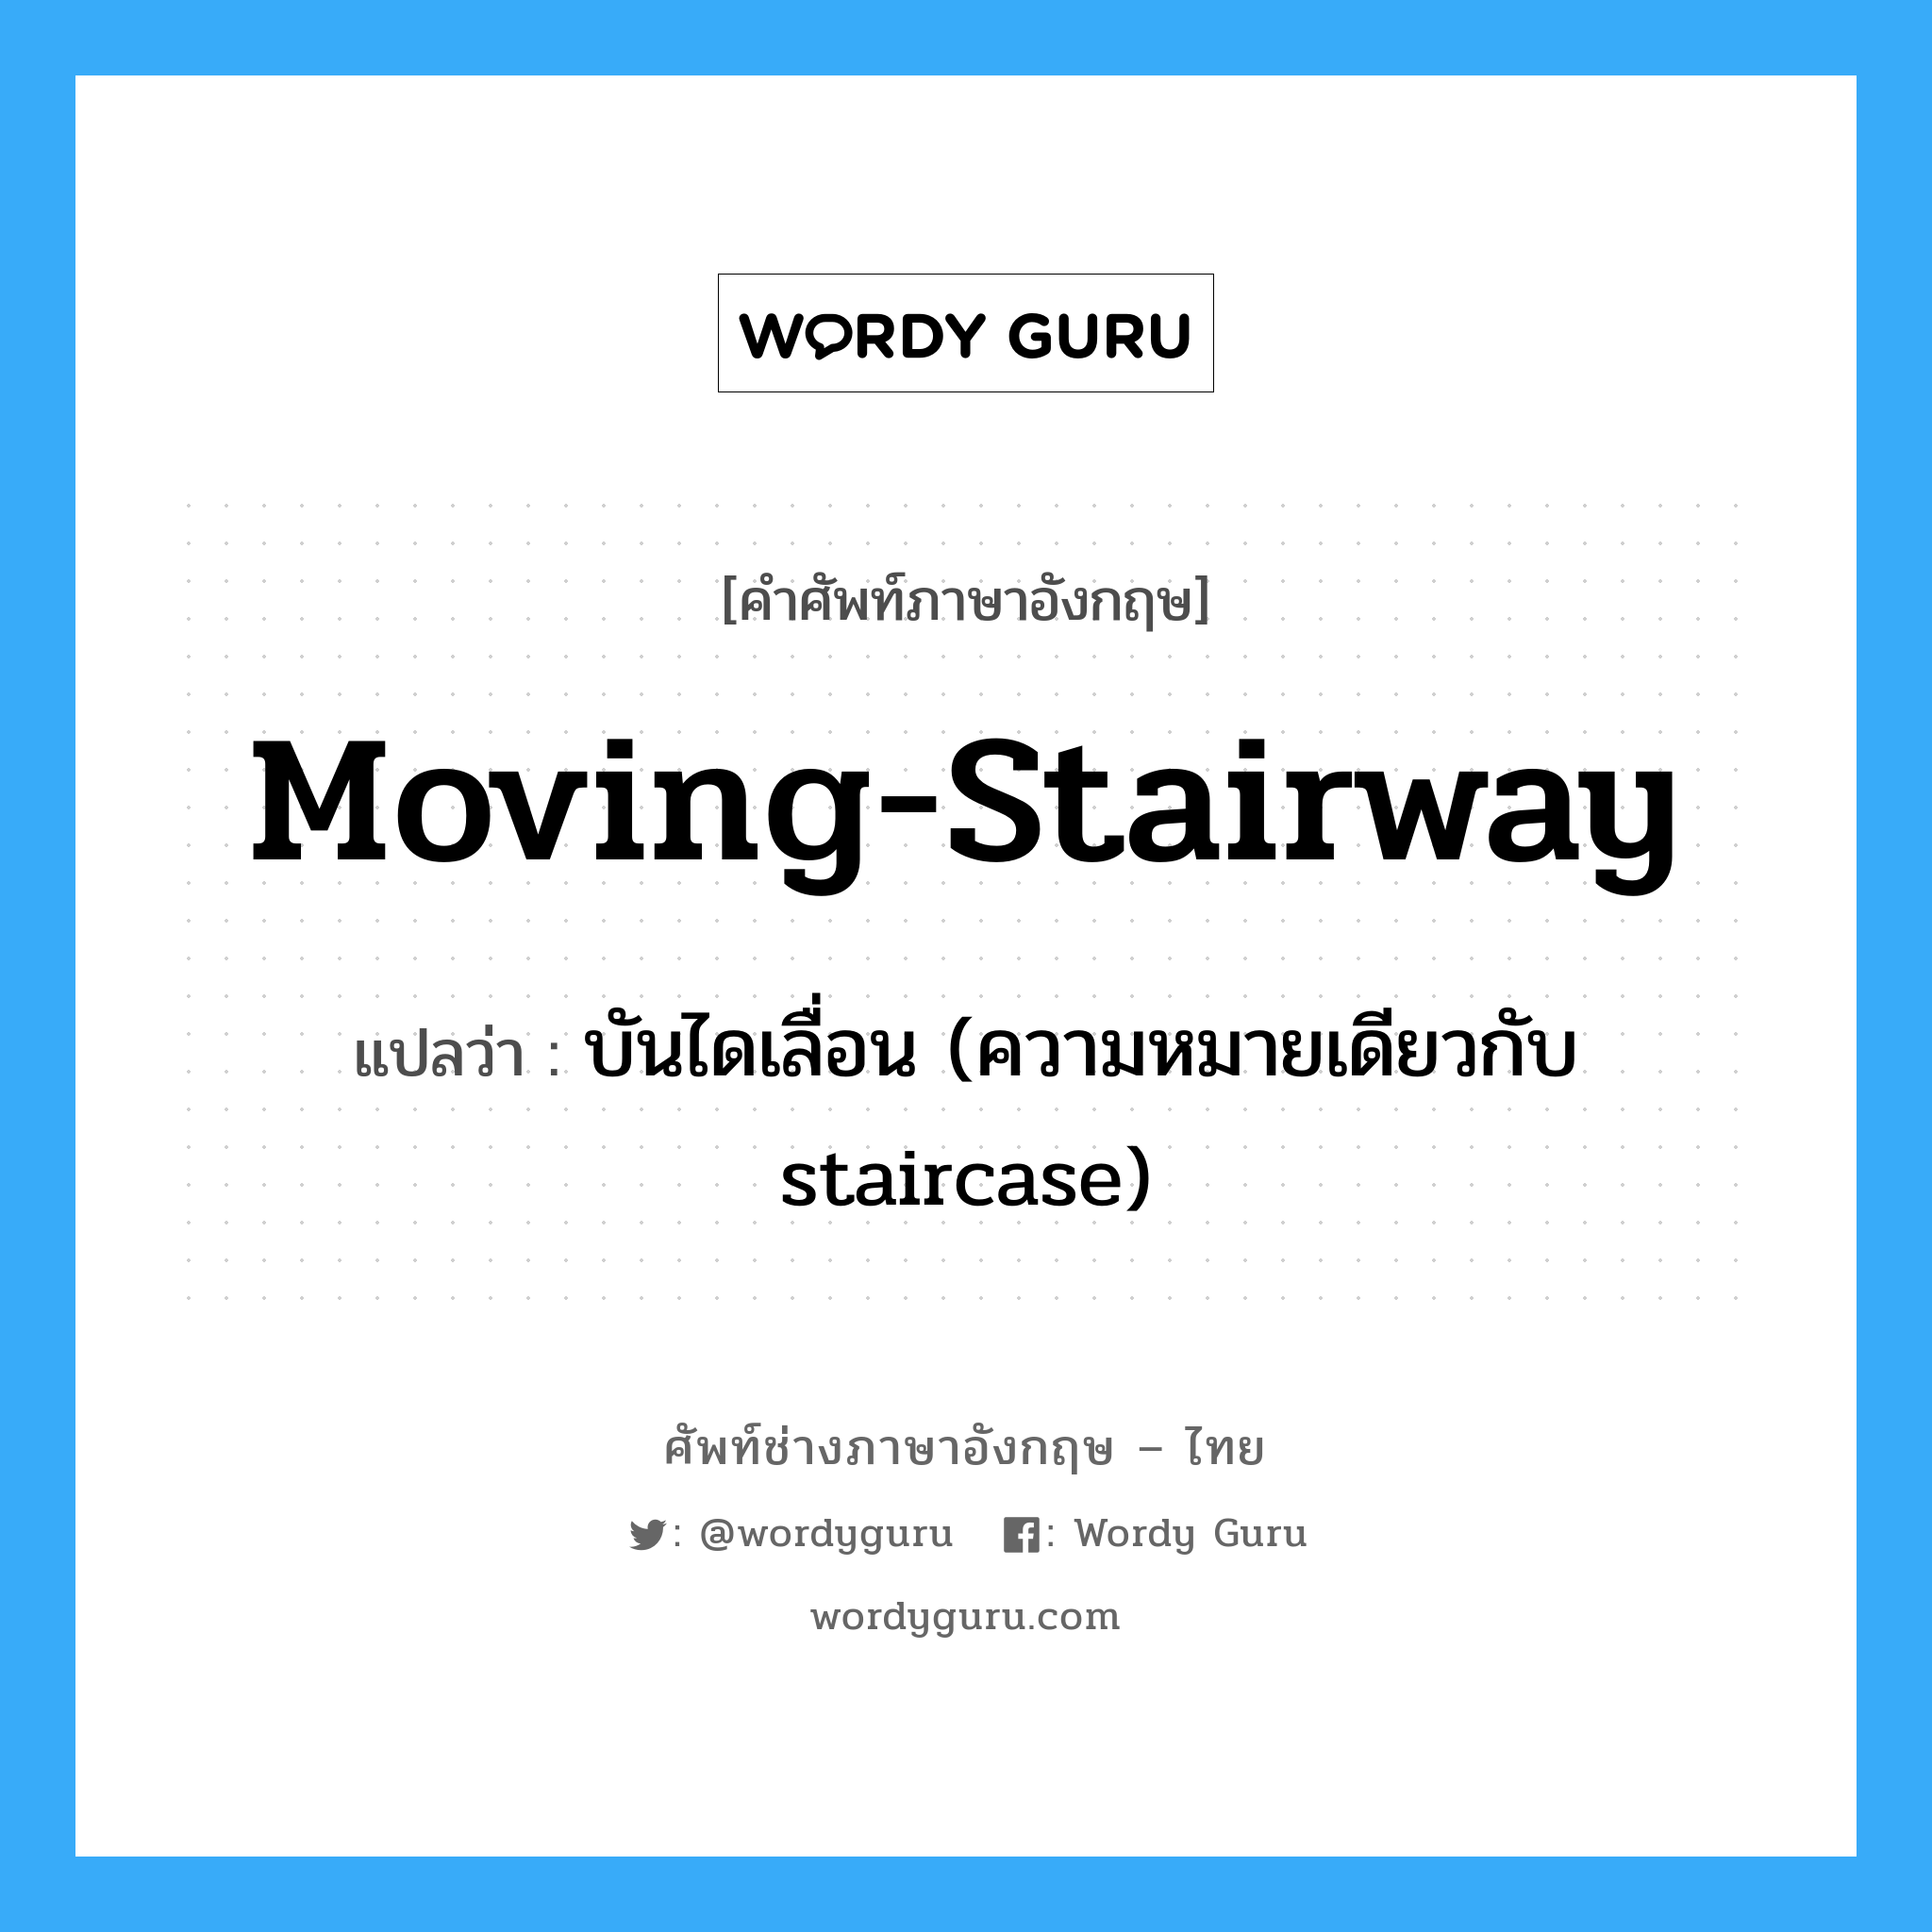 moving-stairway แปลว่า?, คำศัพท์ช่างภาษาอังกฤษ - ไทย moving-stairway คำศัพท์ภาษาอังกฤษ moving-stairway แปลว่า บันไดเลื่อน (ความหมายเดียวกับ staircase)